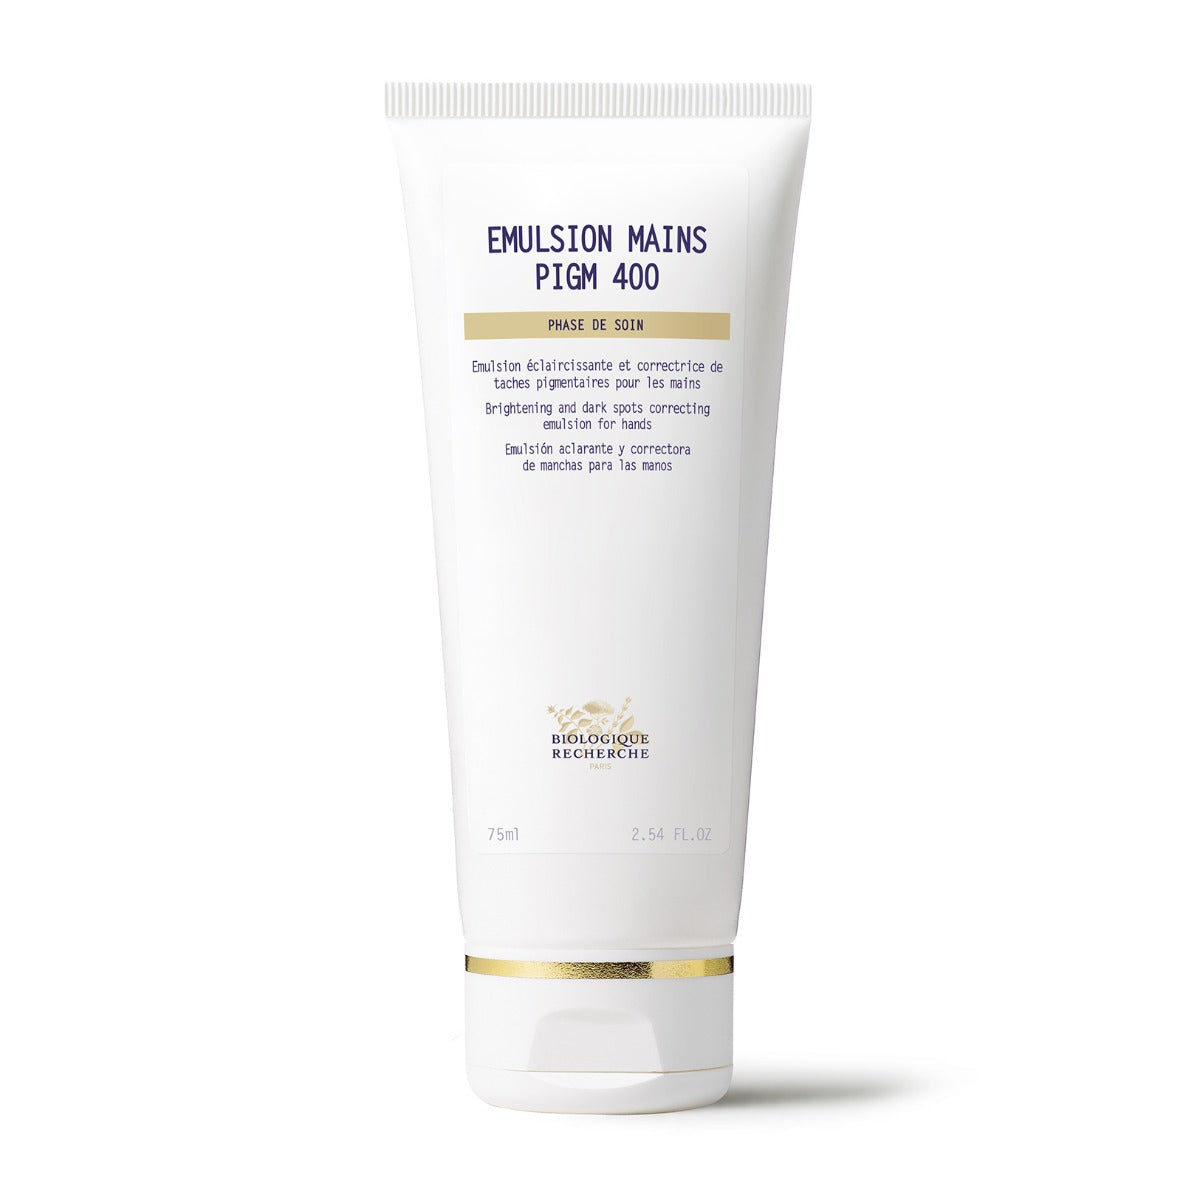 Emulsion Mains PIGM 400 Pigment Spots and Brightening Treatment Cream